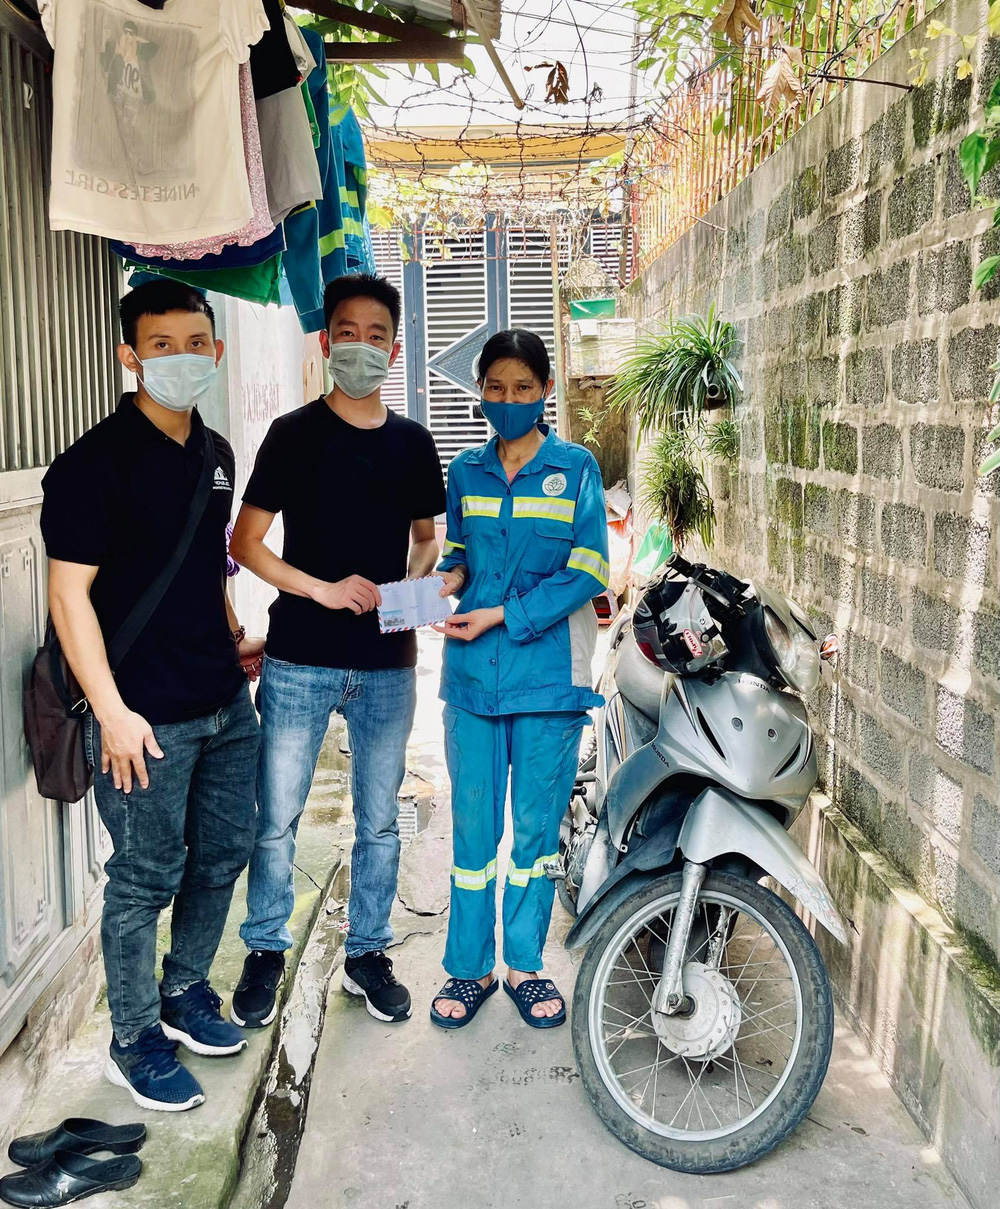 Diễn biến bất ngờ vụ cướp xe máy của nữ lao công ở Hà Nội: Thêm đối tượng thứ 5 bị bắt giữ, lộ kế hoạch 'tẩu tán' tài sản - Ảnh 4